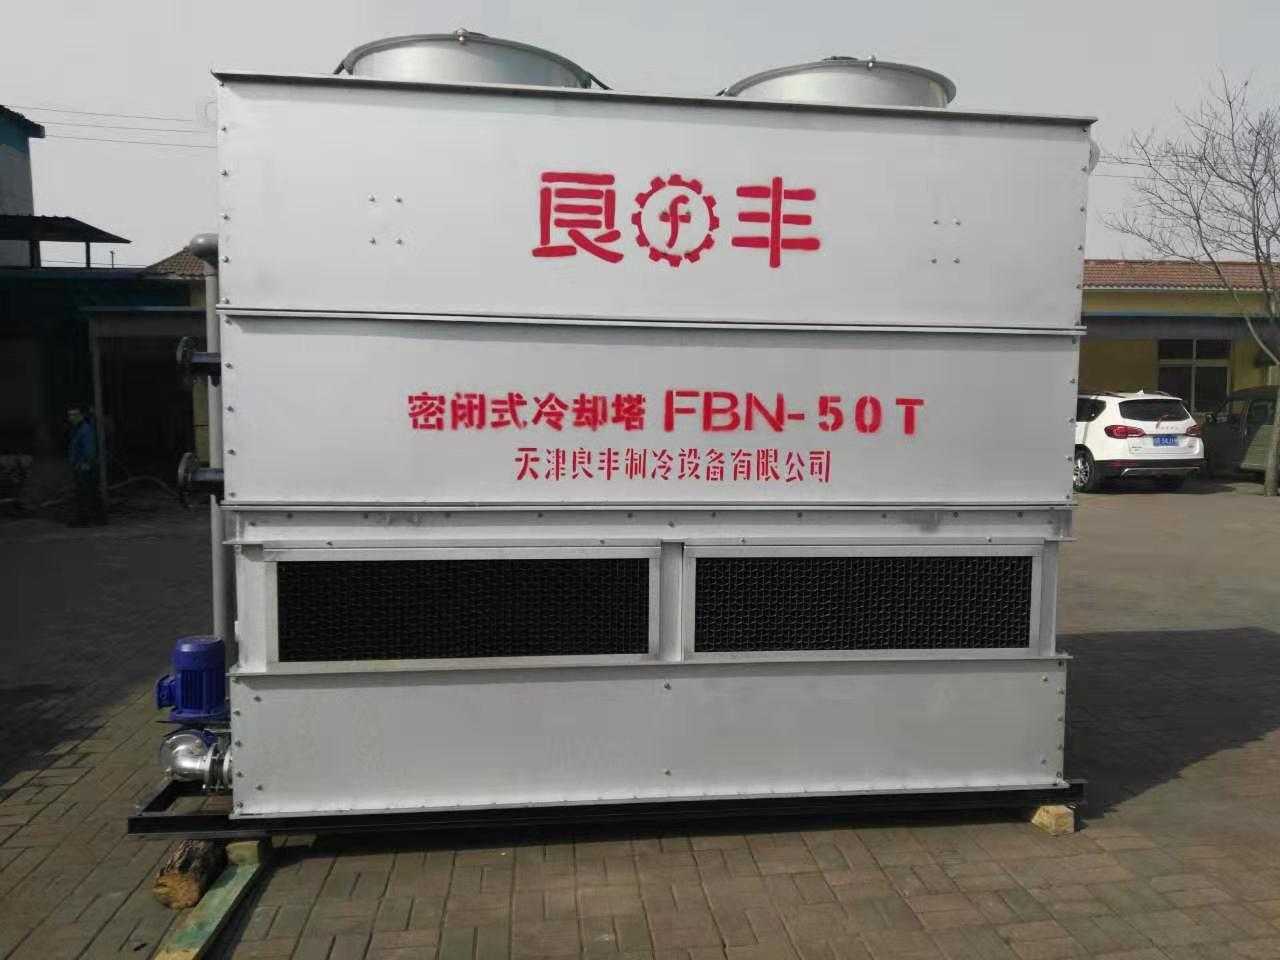 天津北辰冷却塔生产厂家品牌:良丰